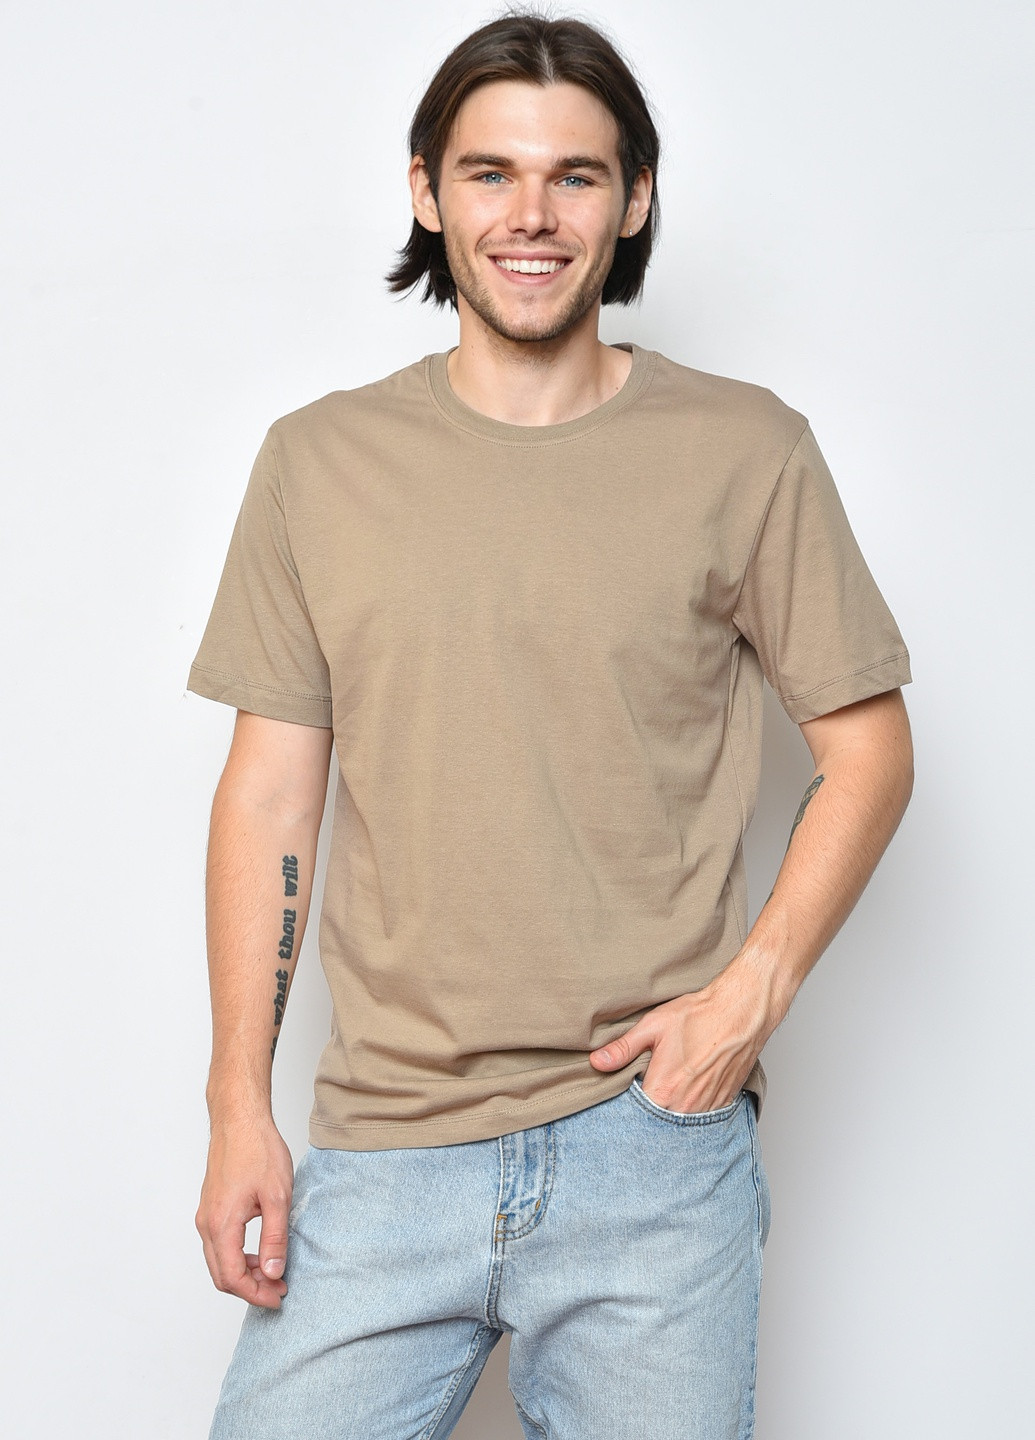 Коричневая футболка мужская однотонная коричневого цвета Let's Shop